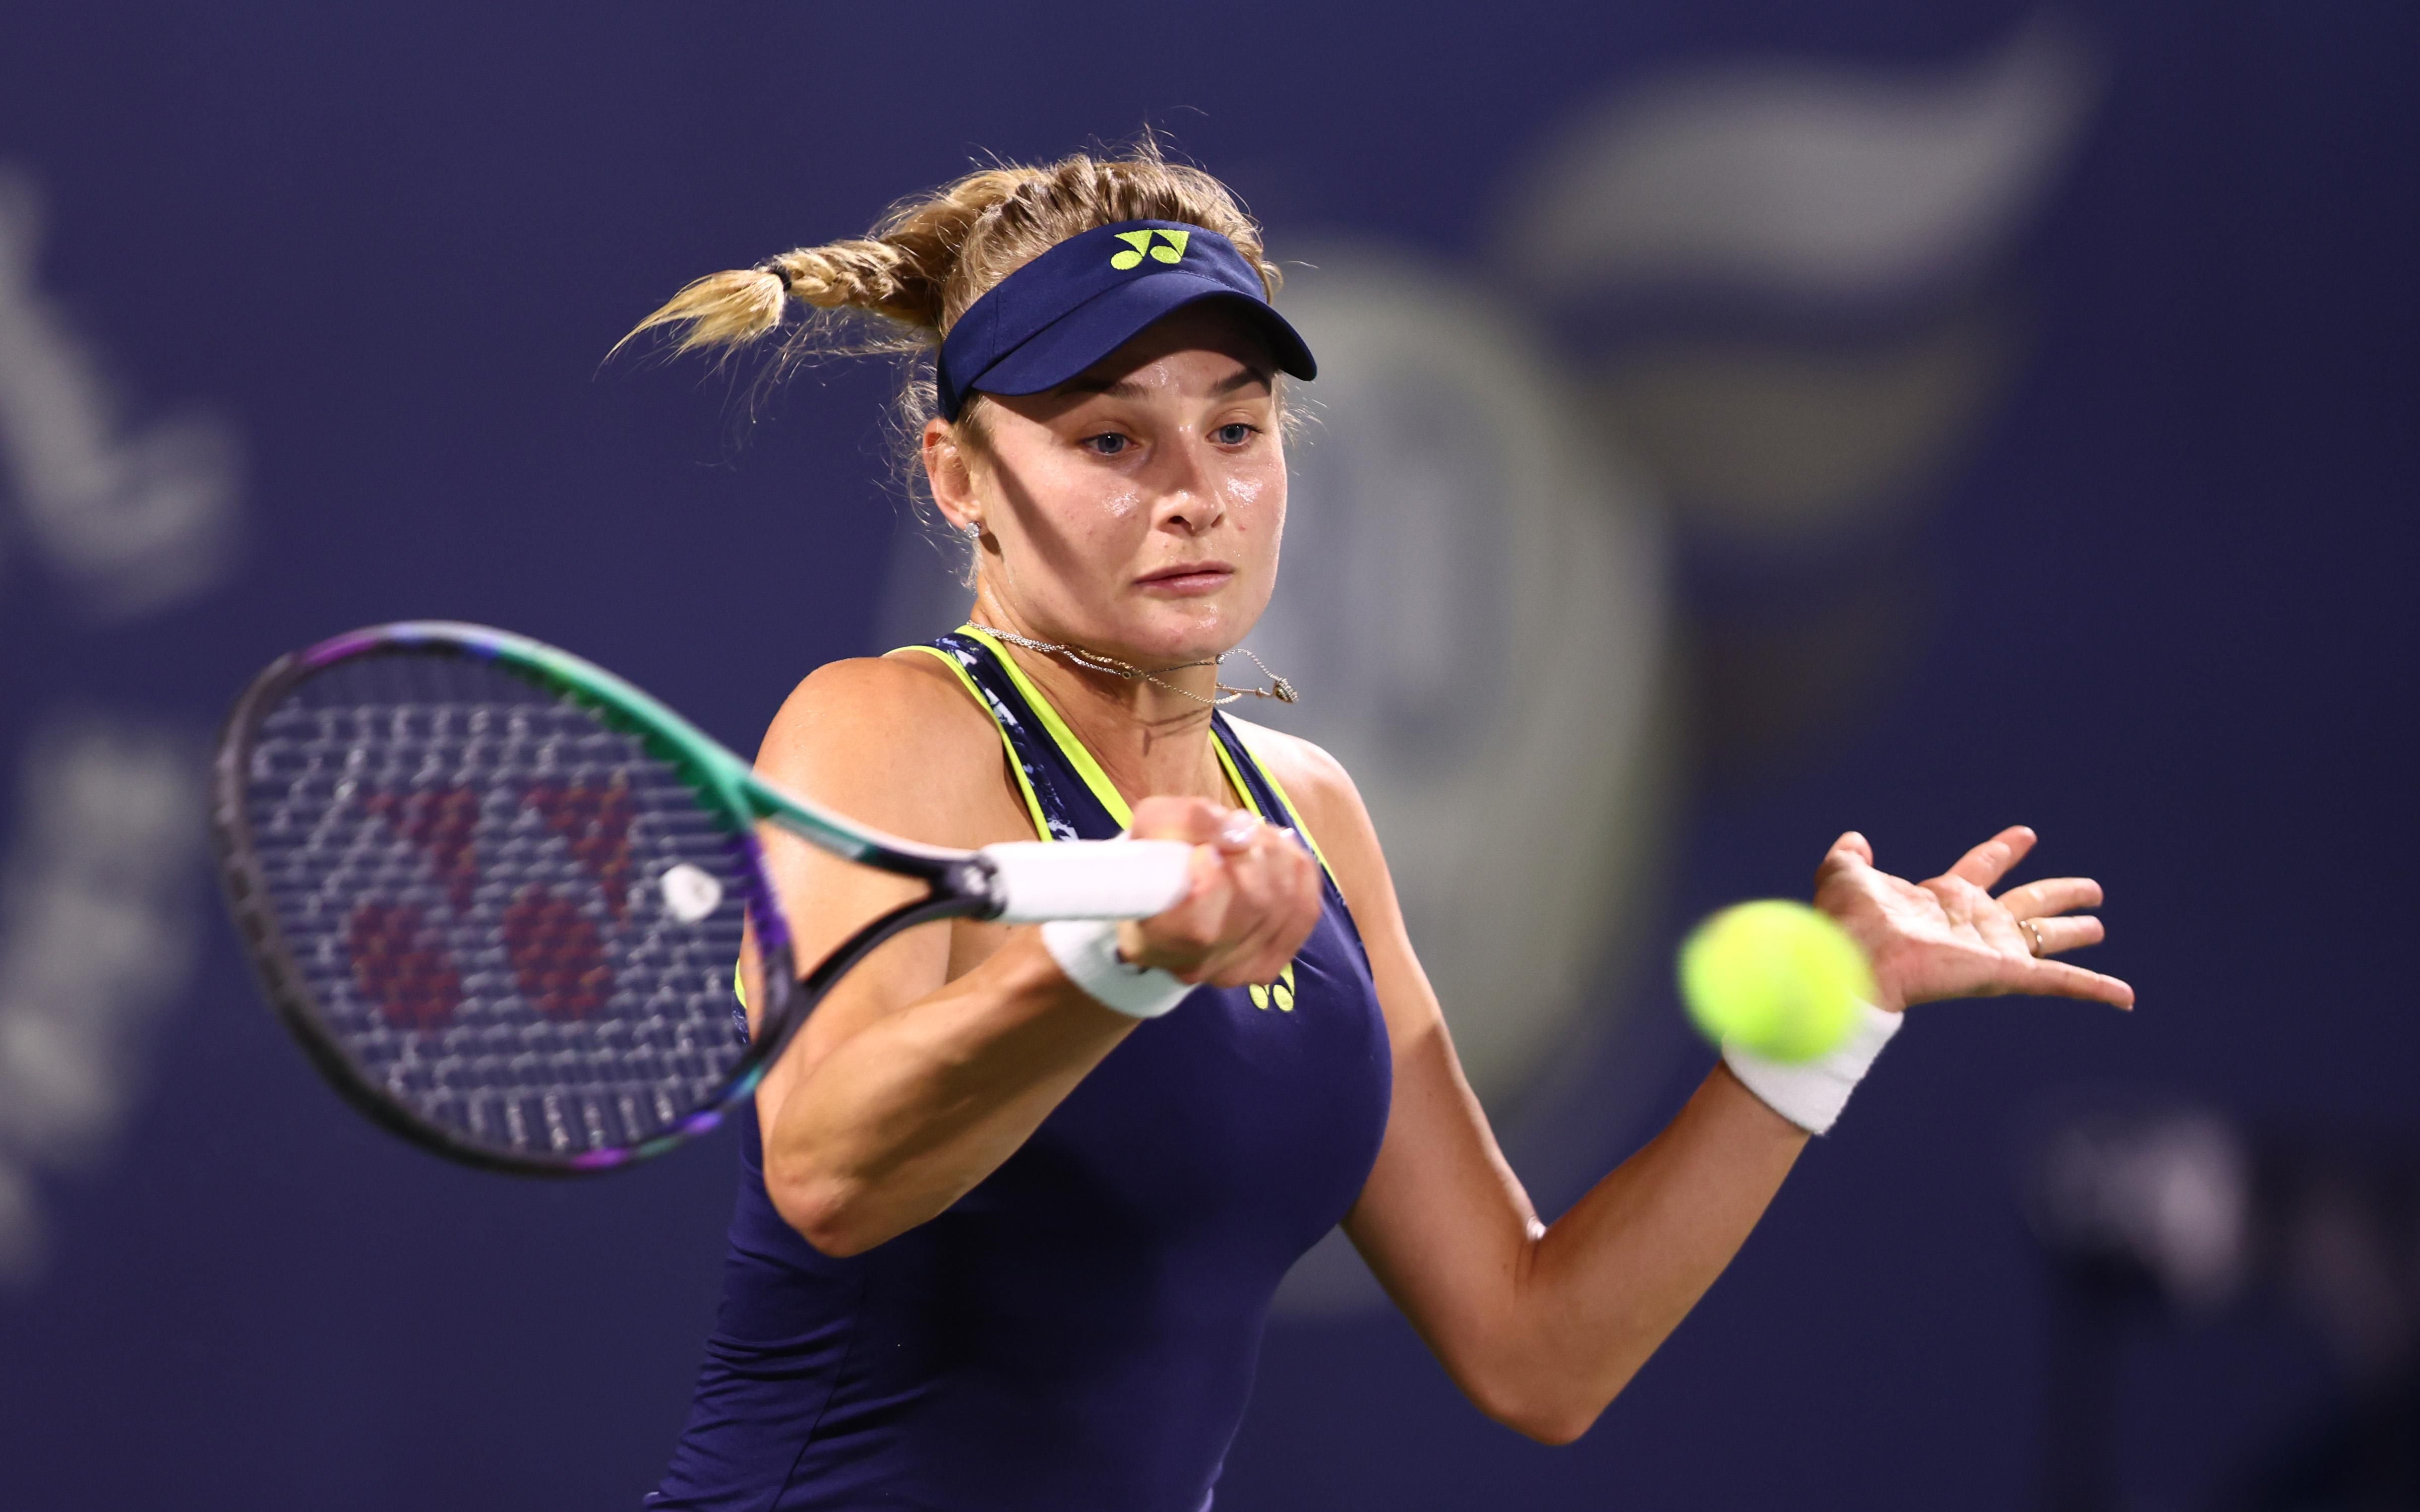 Ястремская – Стародубцева – результат финала квалификации турнира WTA500 в Австралии